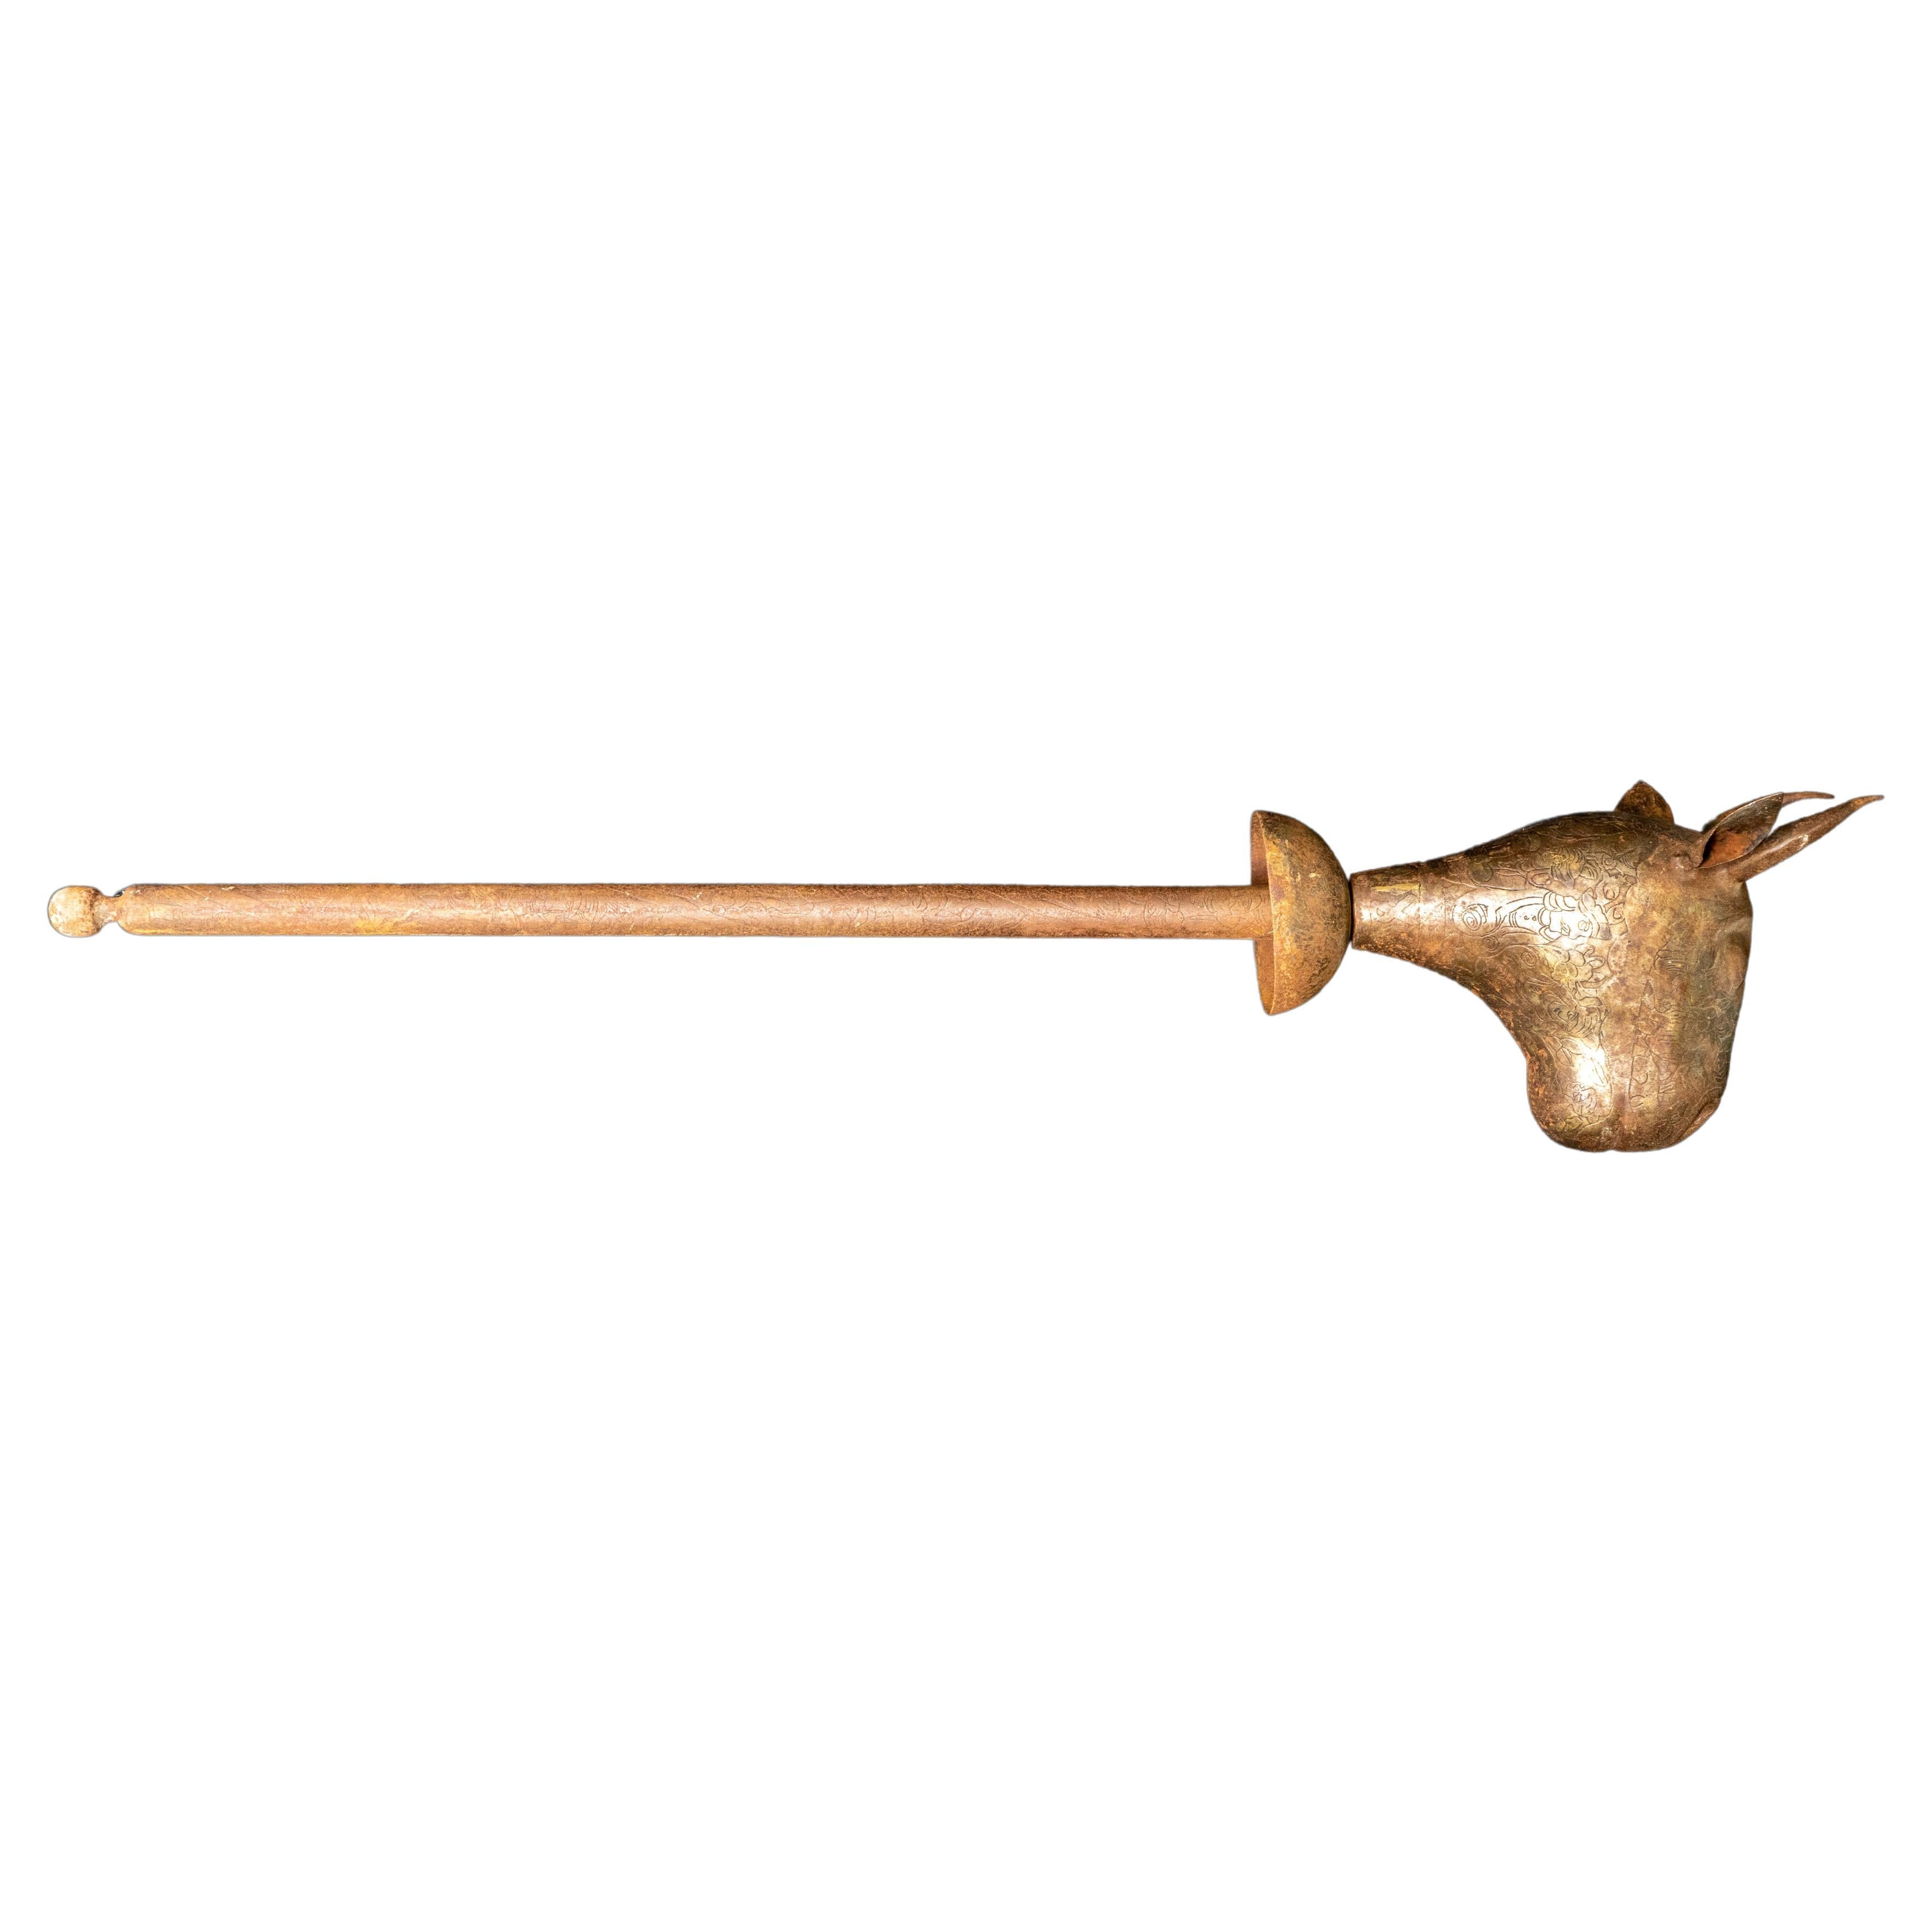 Ce bâton de cérémonie Qajar à tête de taureau du XIXe siècle est un artefact remarquable qui témoigne de l'artisanat exquis et de la finesse artistique de la dynastie Qajar. Fabriqué en acier, ce bâton de cérémonie présente des gravures complexes